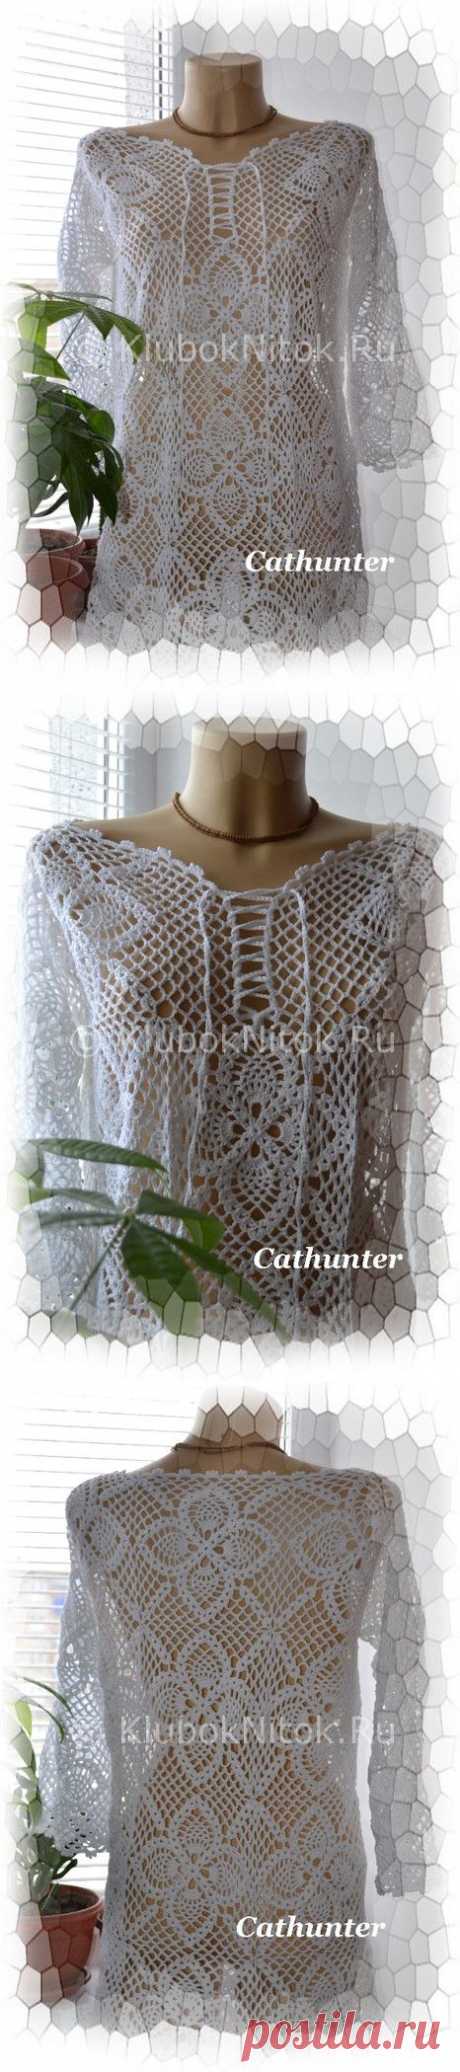 Белая цветочная туника | Вязание для женщин | Вязание спицами и крючком. Схемы вязания.